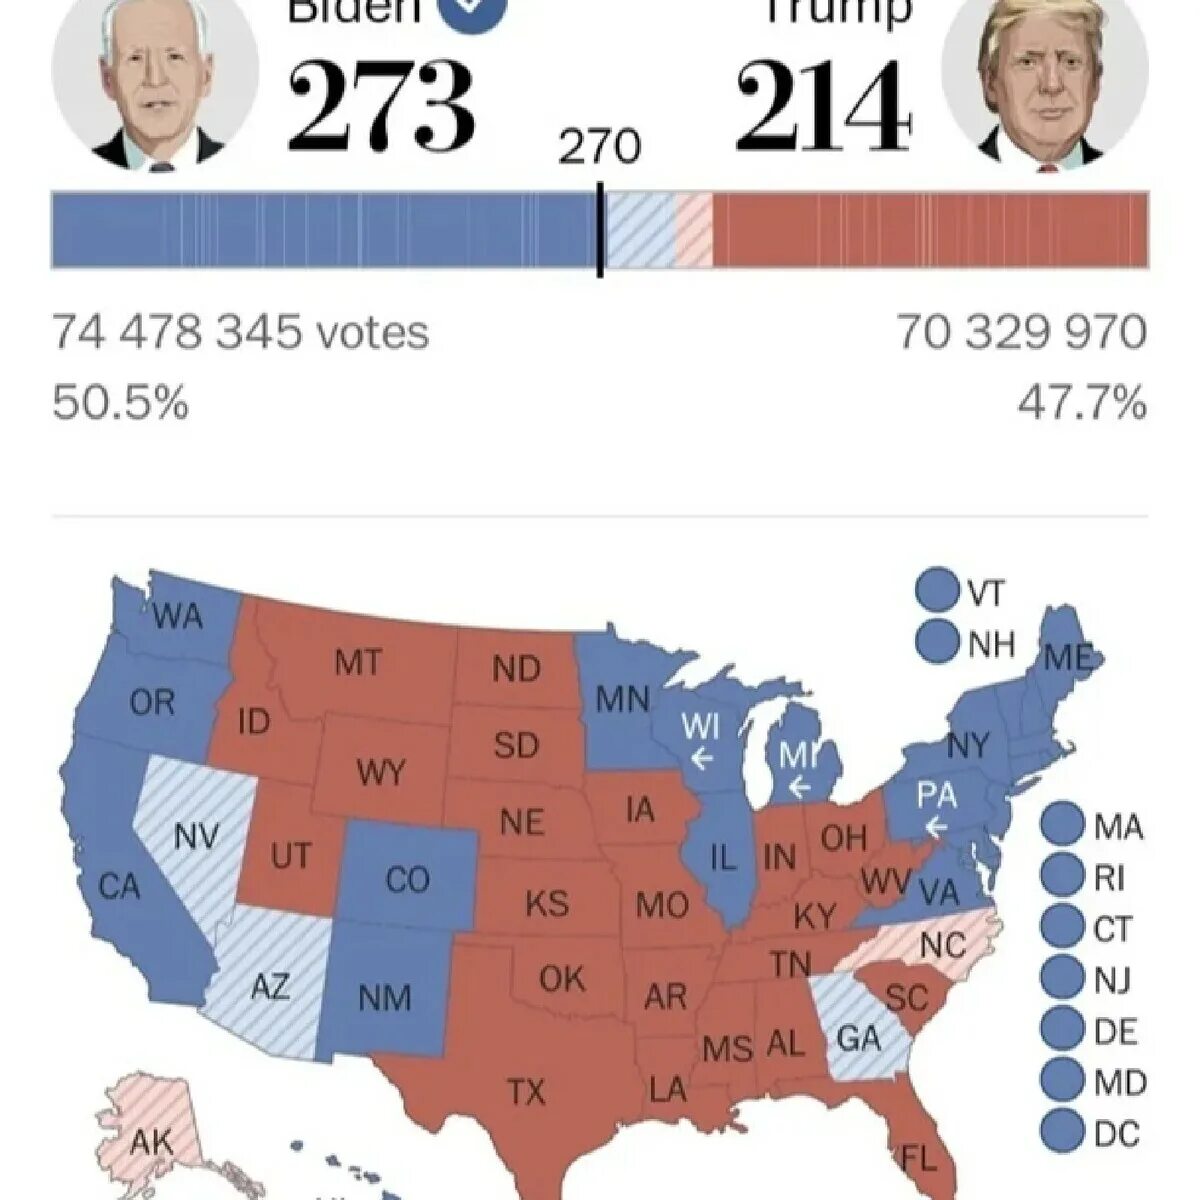 Сколько набирает трамп. Итоги выборов президента США 2020. Выборы США 2020 по Штатам. Выборы в США 2020 карта выборщиков. Итоги президентских выборов в США по Штатам 2020.